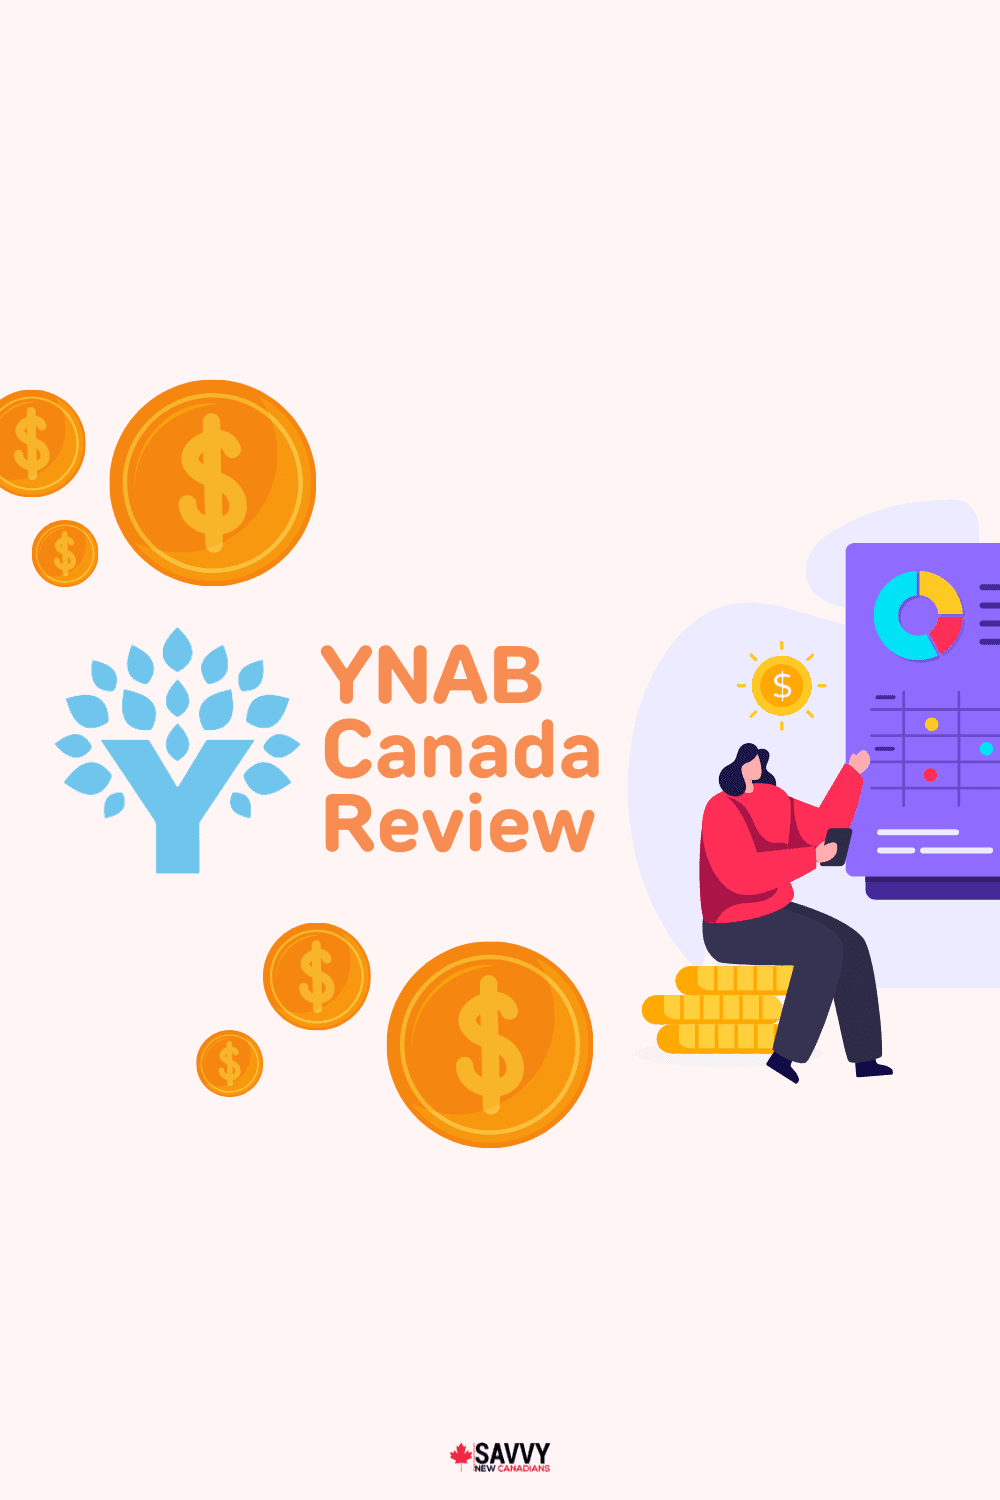 YNAB Canada Review 1 